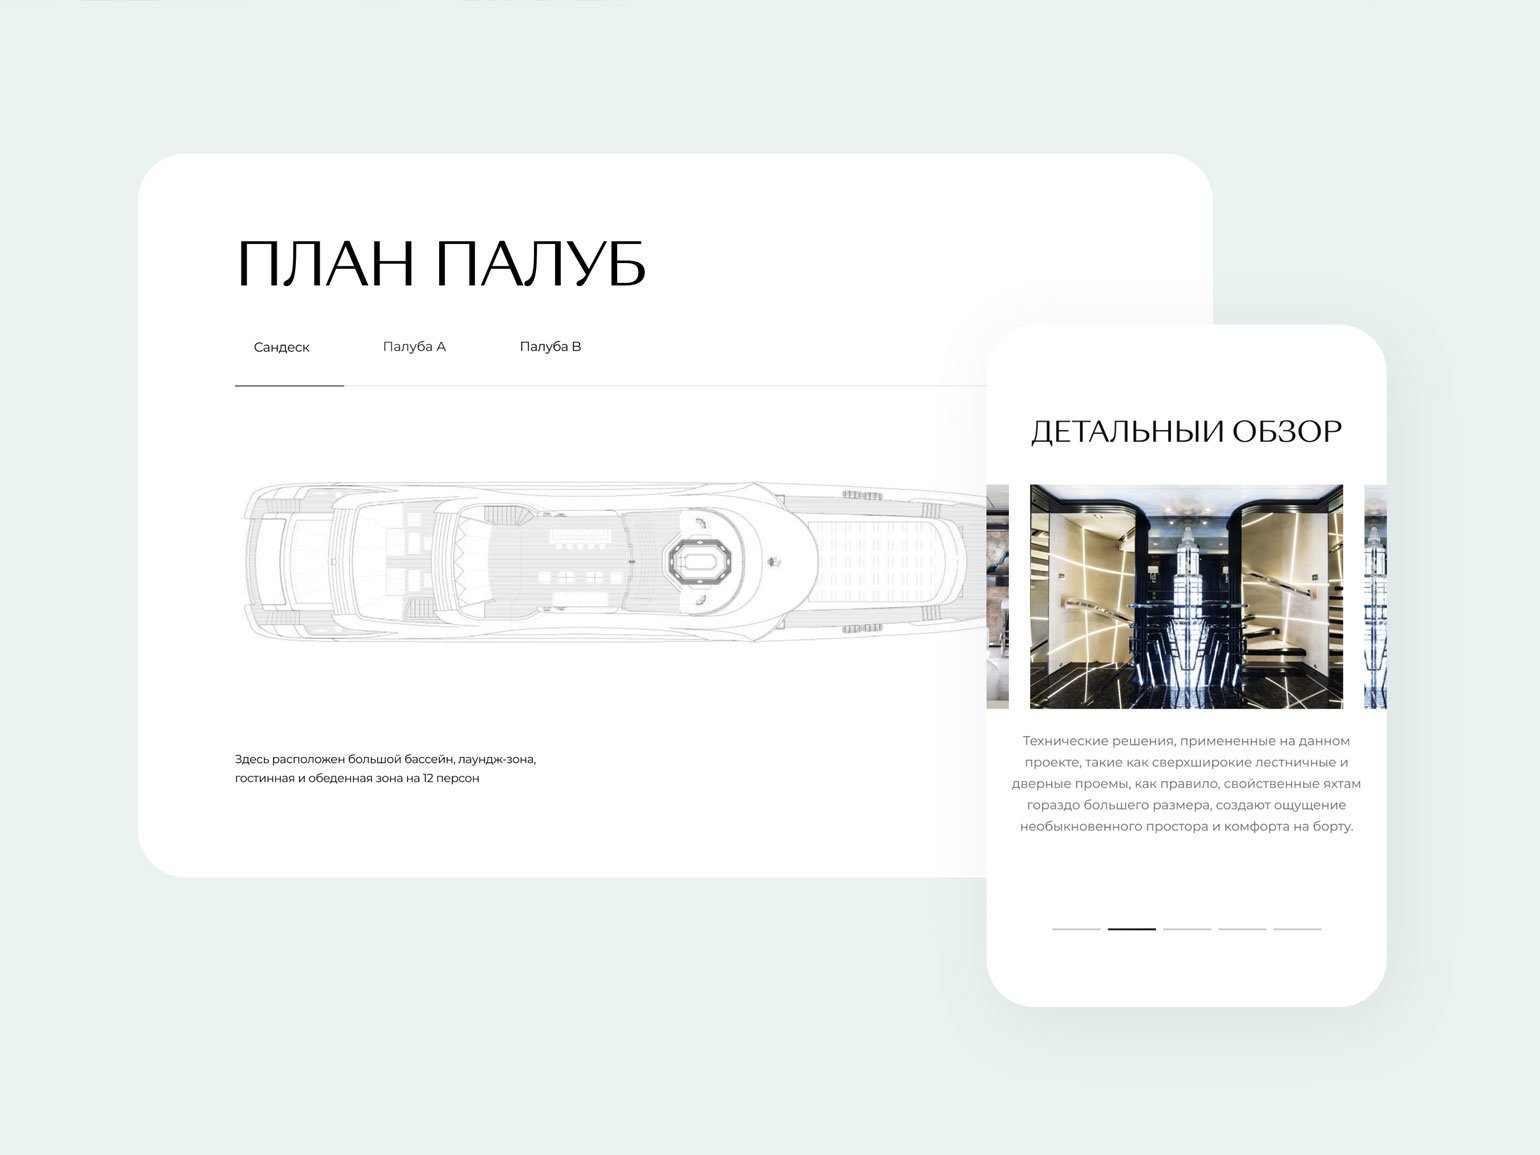 30 студий и бюро из России: дизайн цифровых продуктов